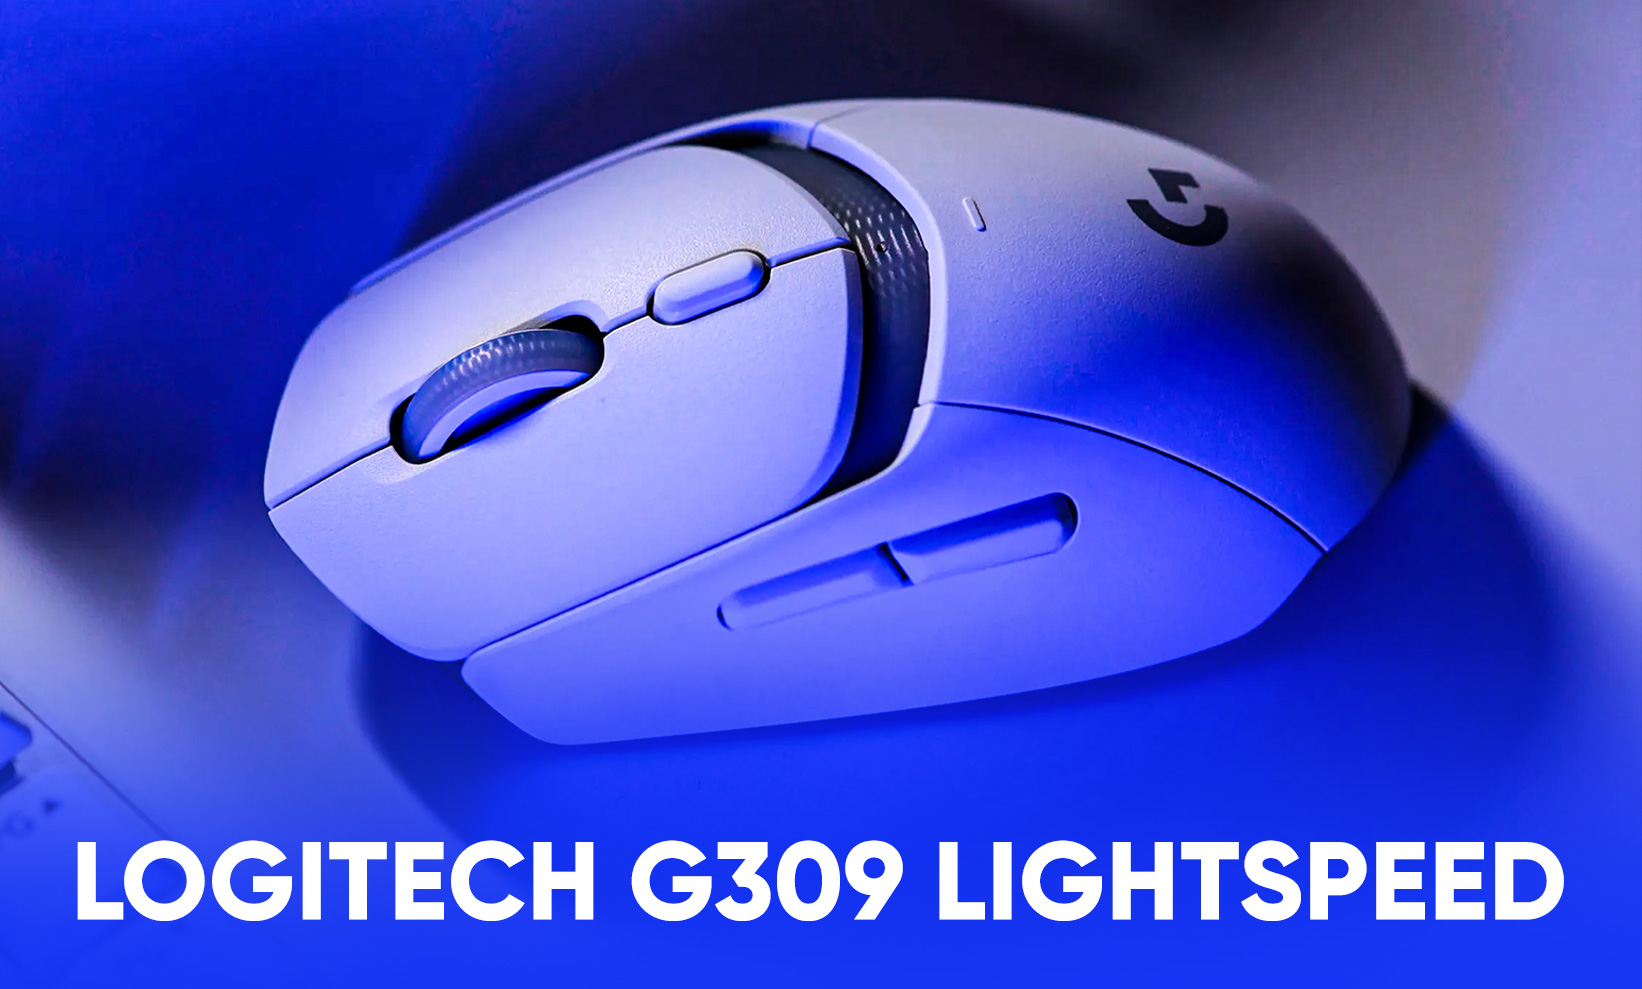 Новая игровая мышка Logitech G309 LIGHTSPEED: характеристики, дизайн, цена